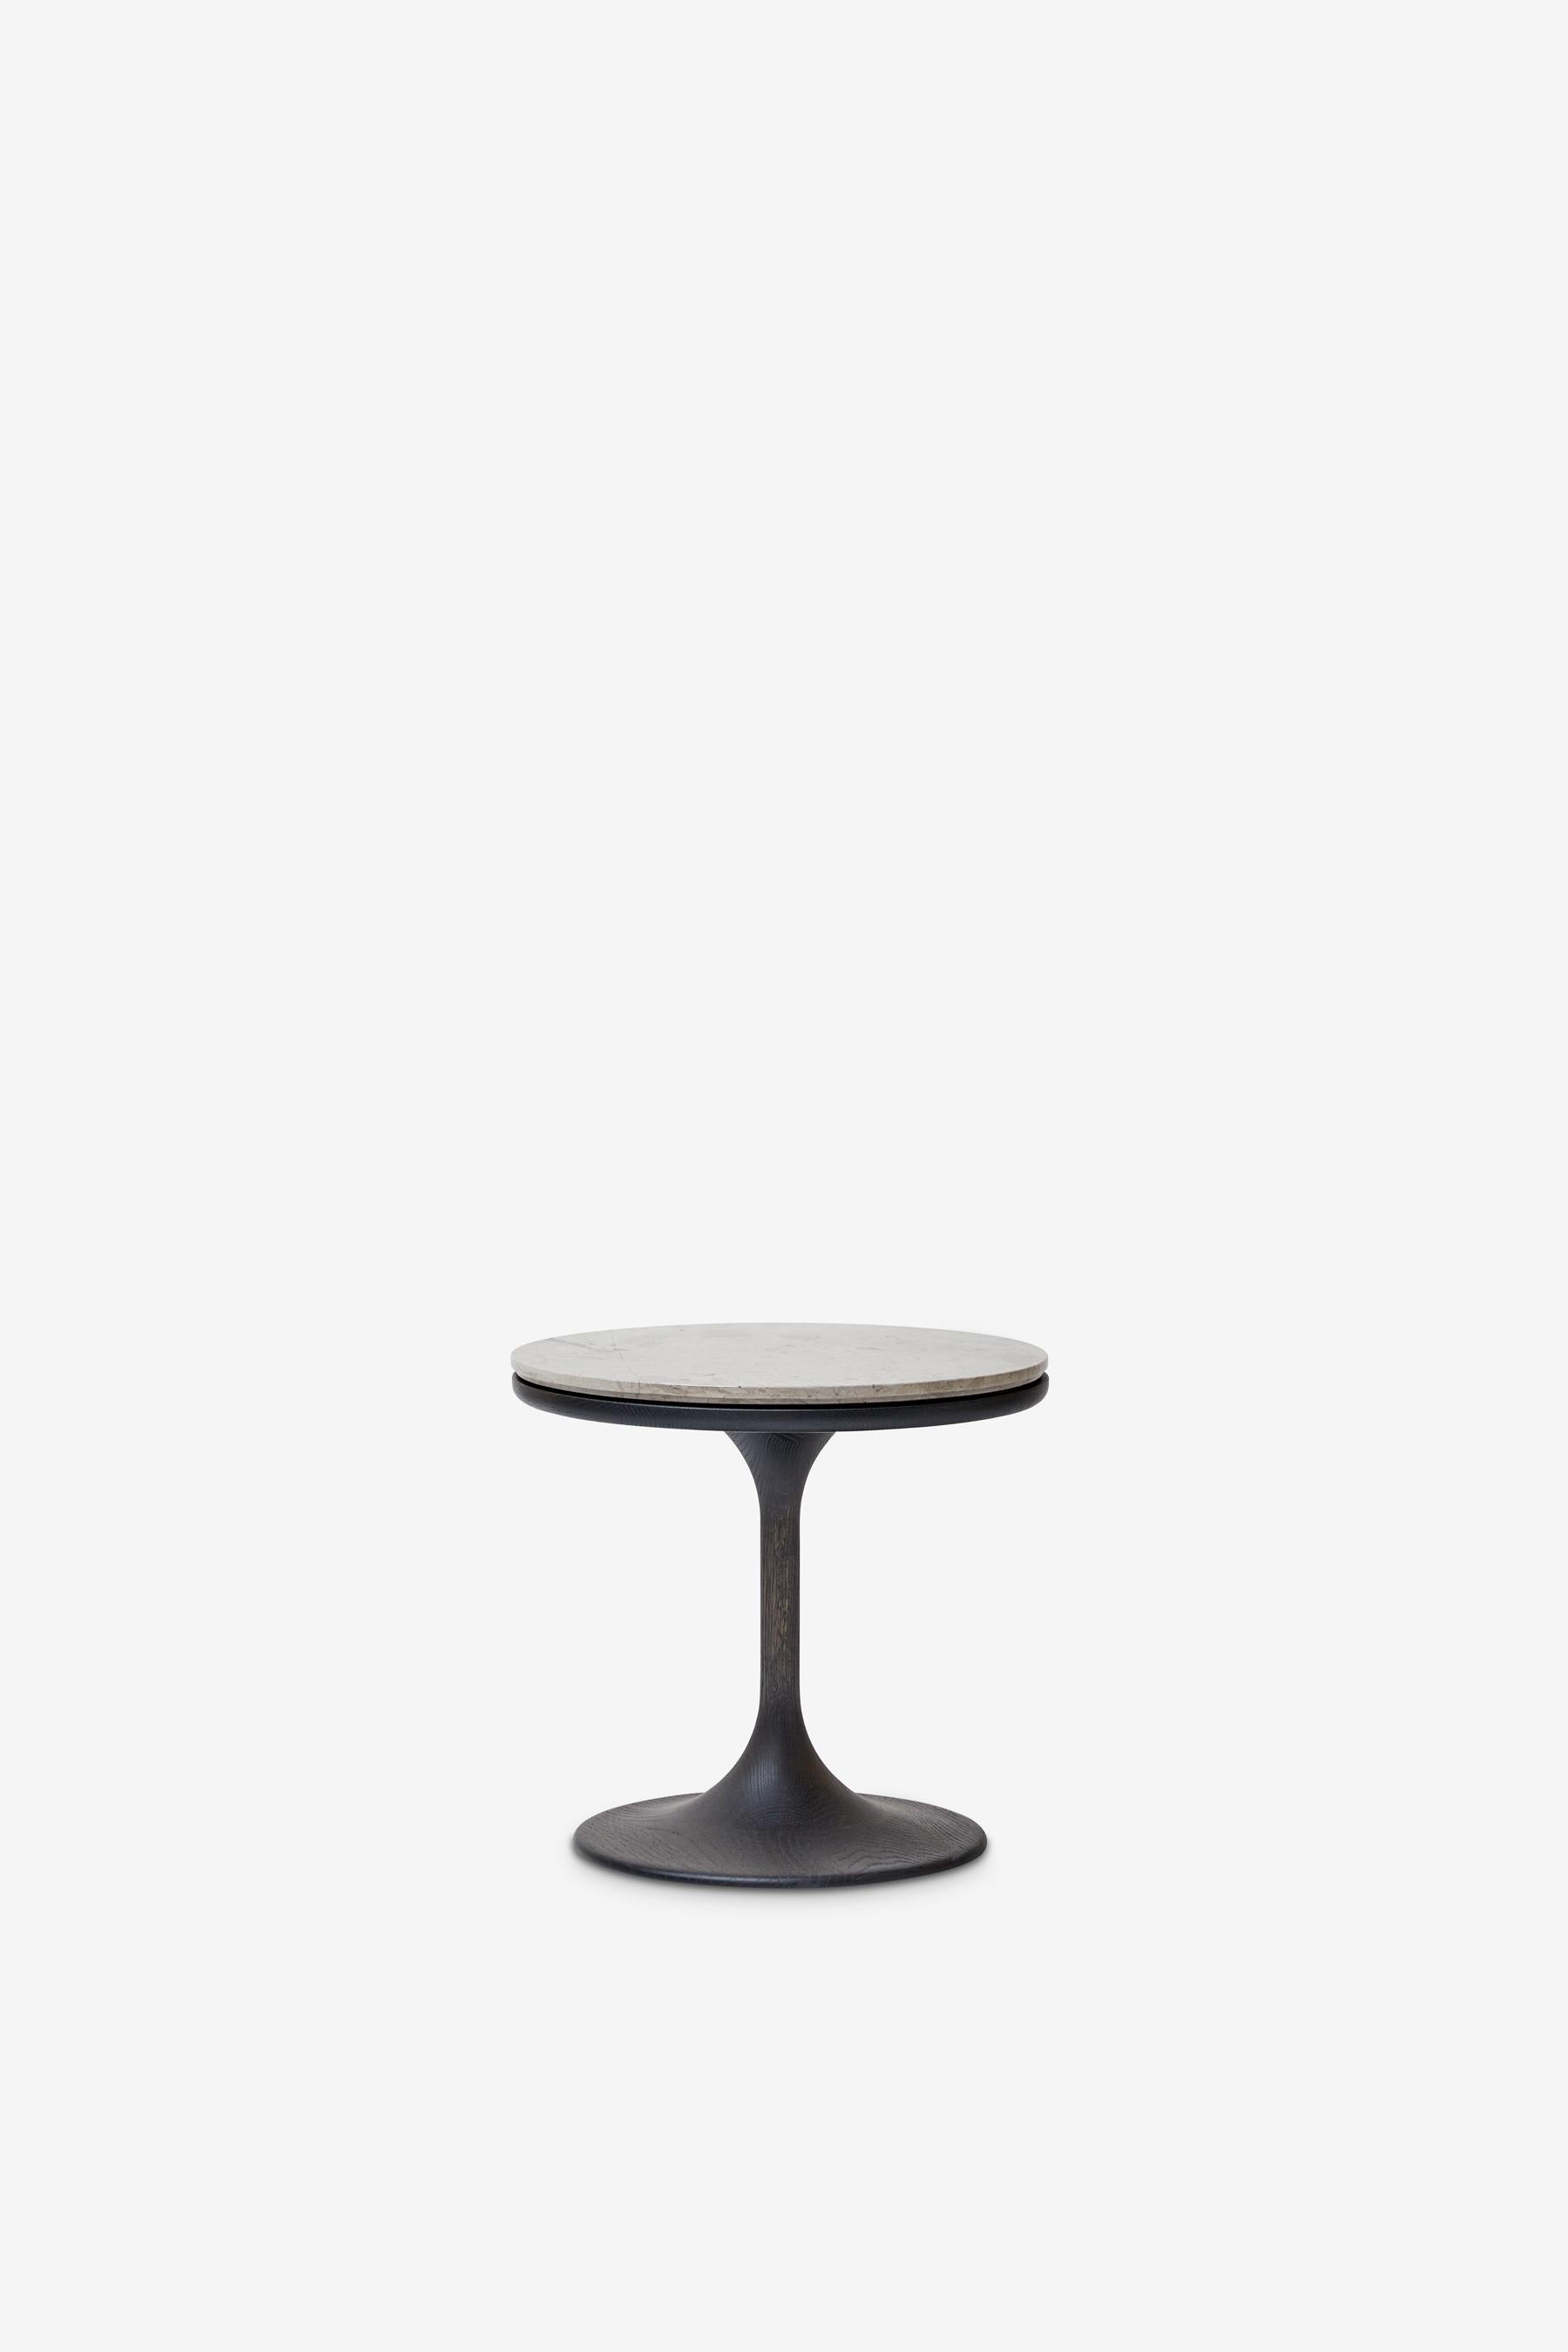 Danish MG203 side table in dark oak by Malte Gormsen Designed by Space Copenhagen For Sale